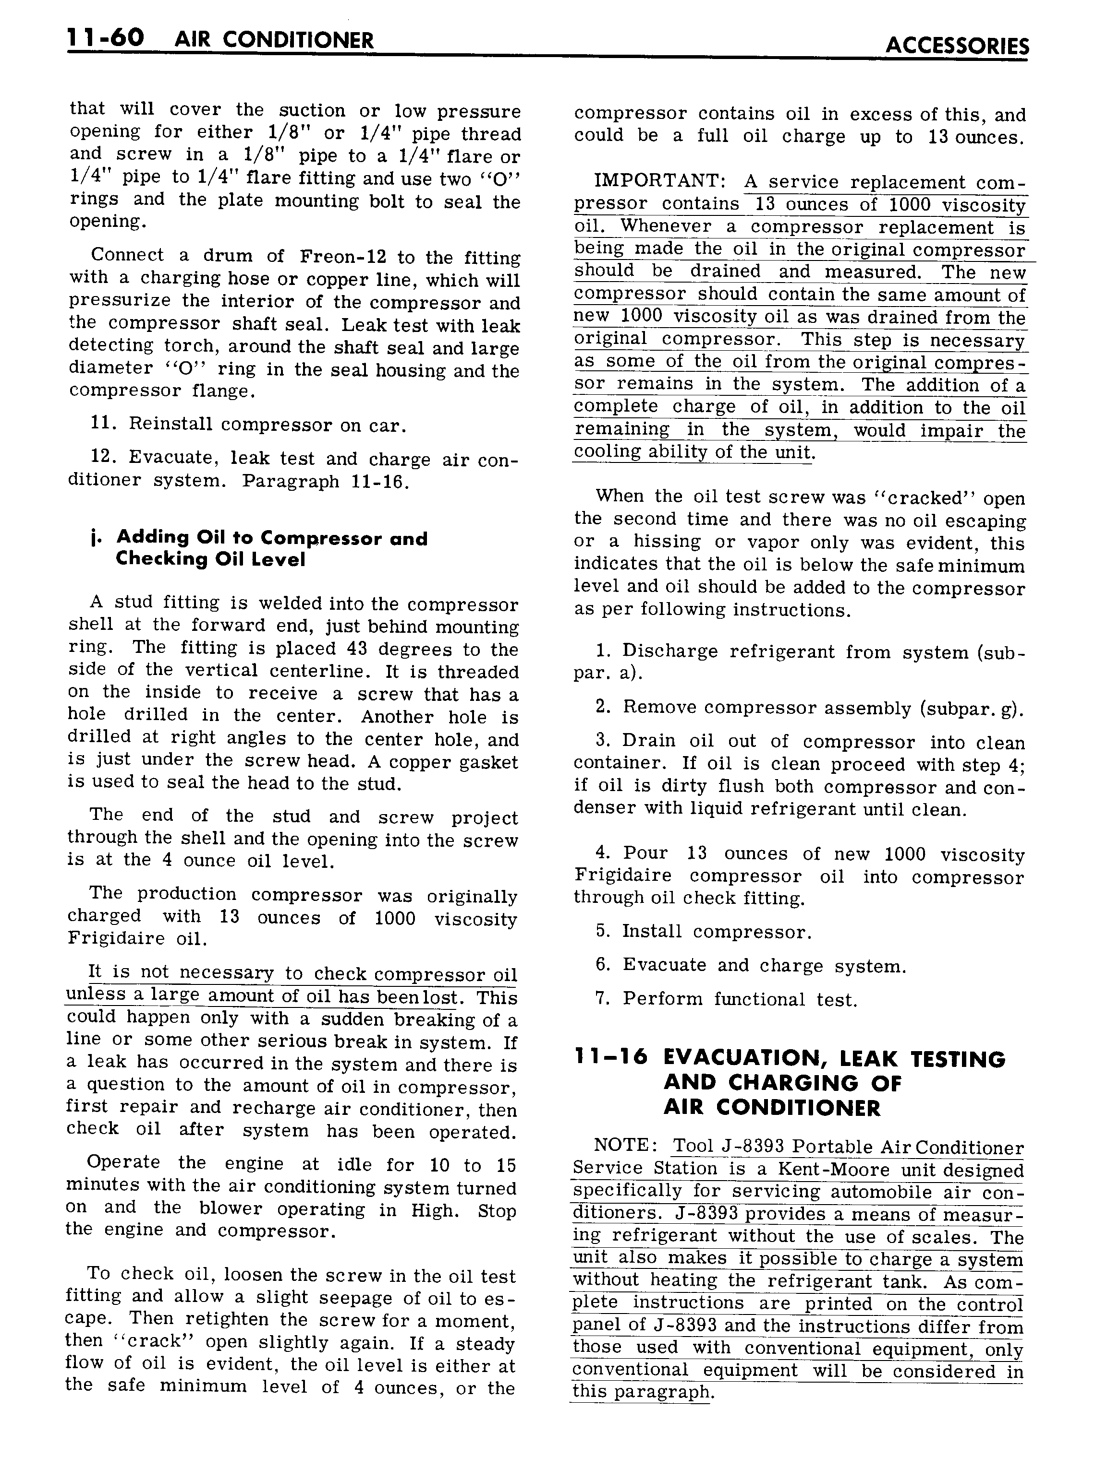 n_11 1961 Buick Shop Manual - Accessories-060-060.jpg